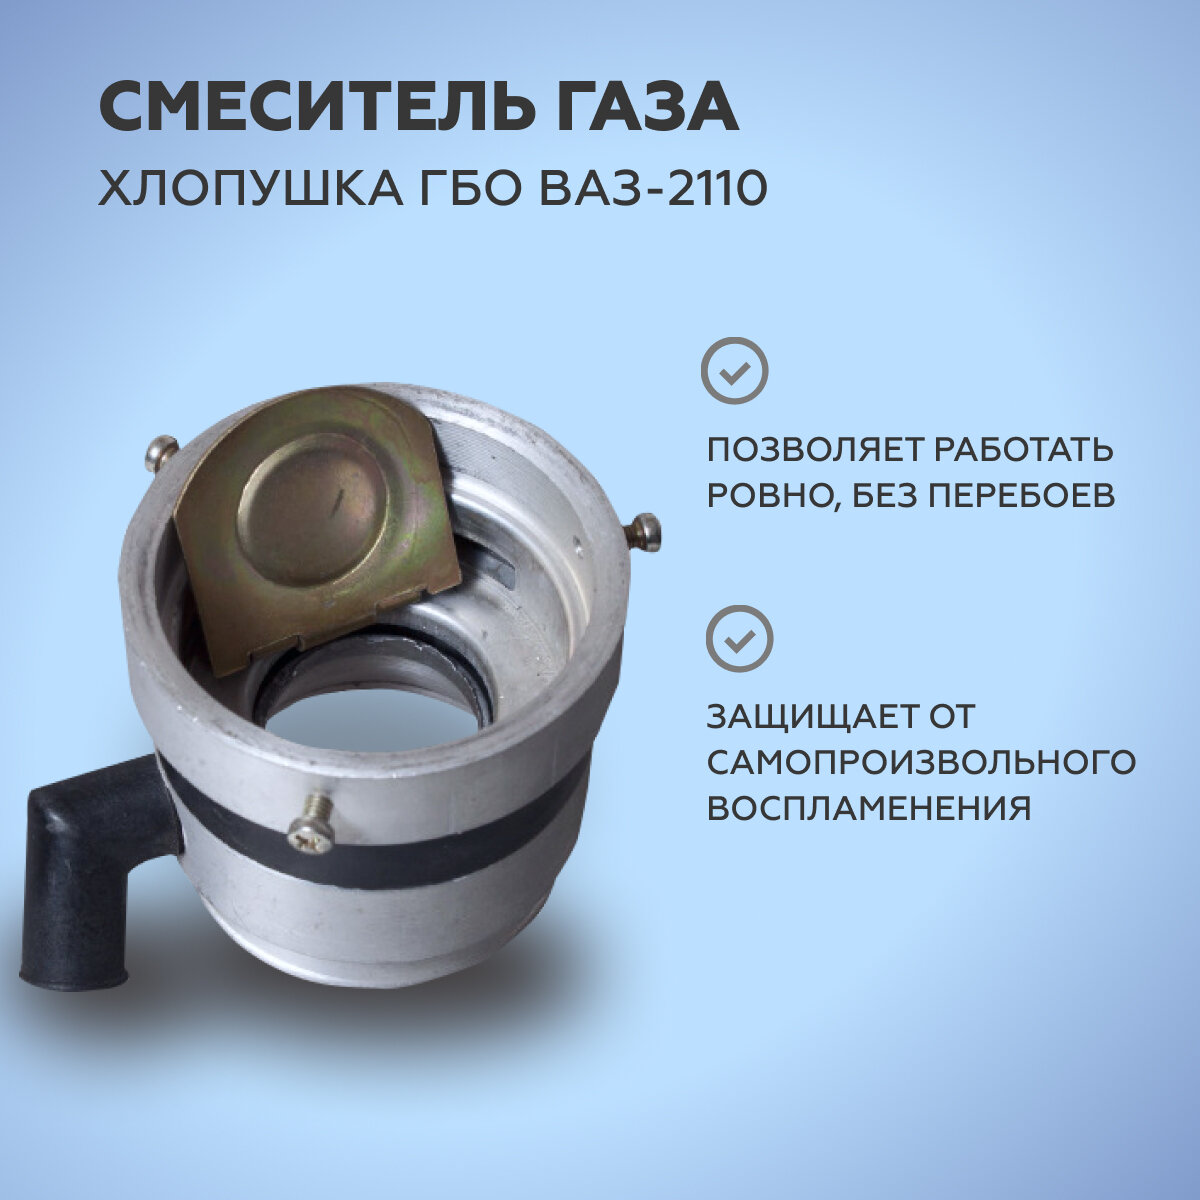 Смеситель газа / хлопушка ГБО ВАЗ-2110 инжекторный НЗГА Белоруссия